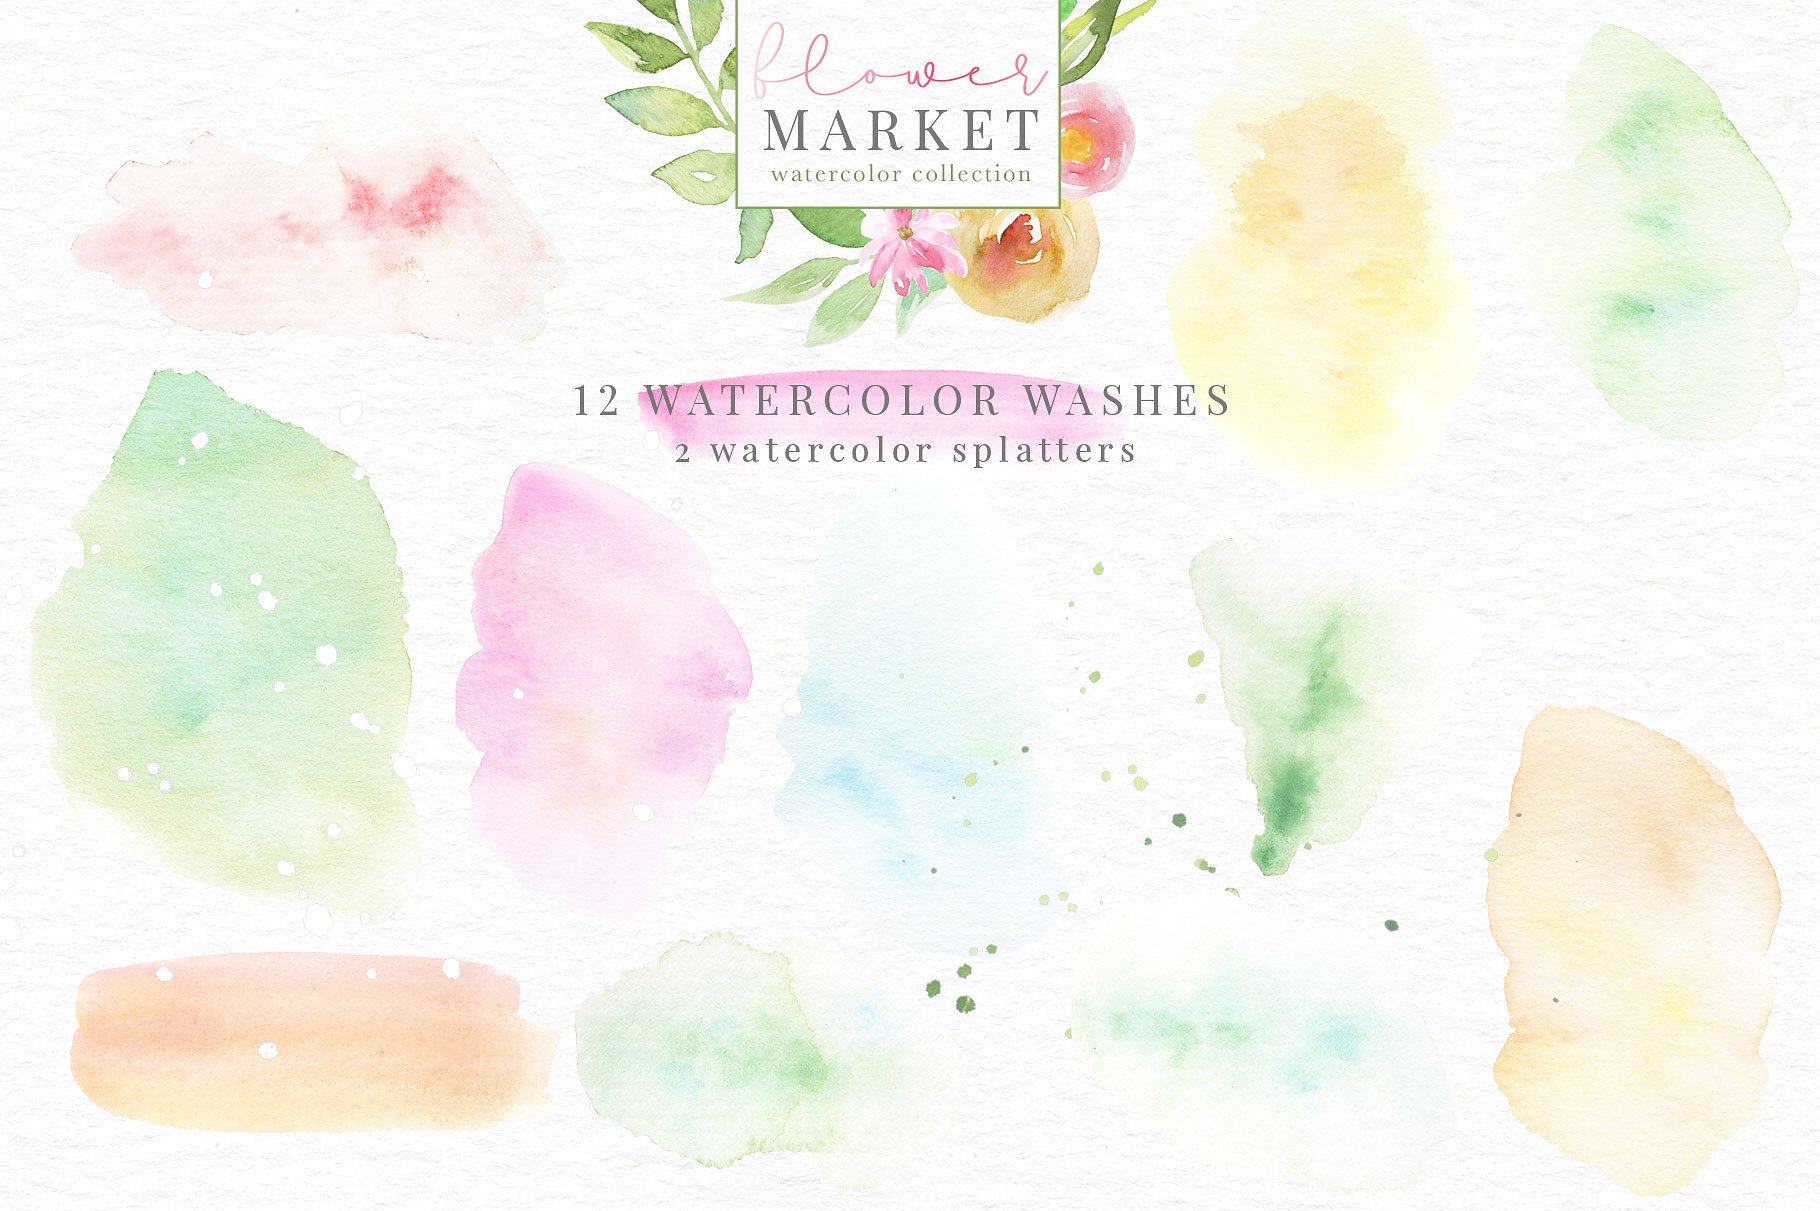 手绘水彩花卉和花卉字母设计素材 Flower-Market-